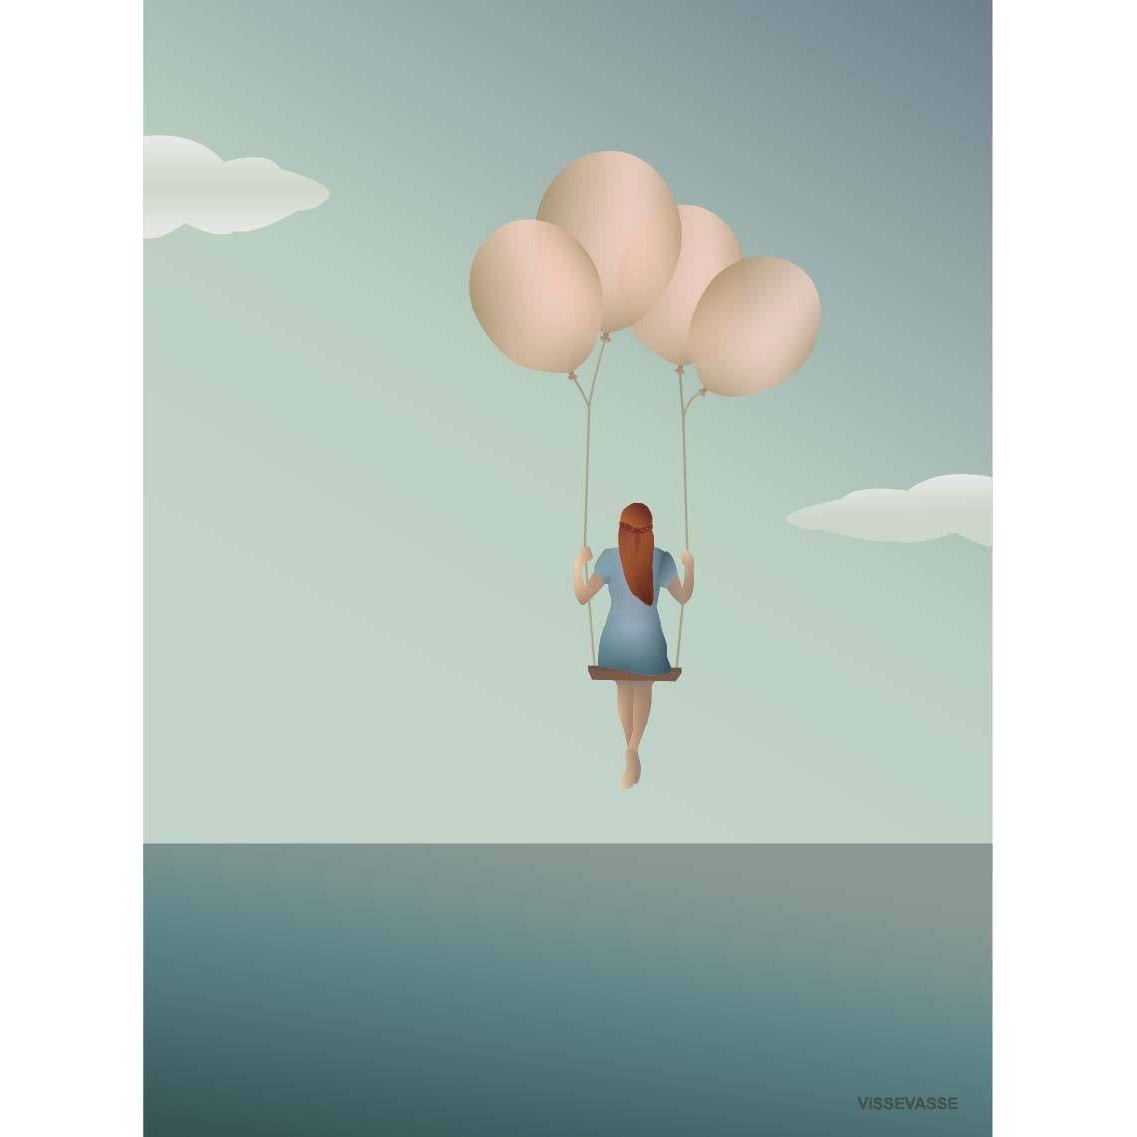 Vissevasse Balloon Dream Poster, 15x21 cm